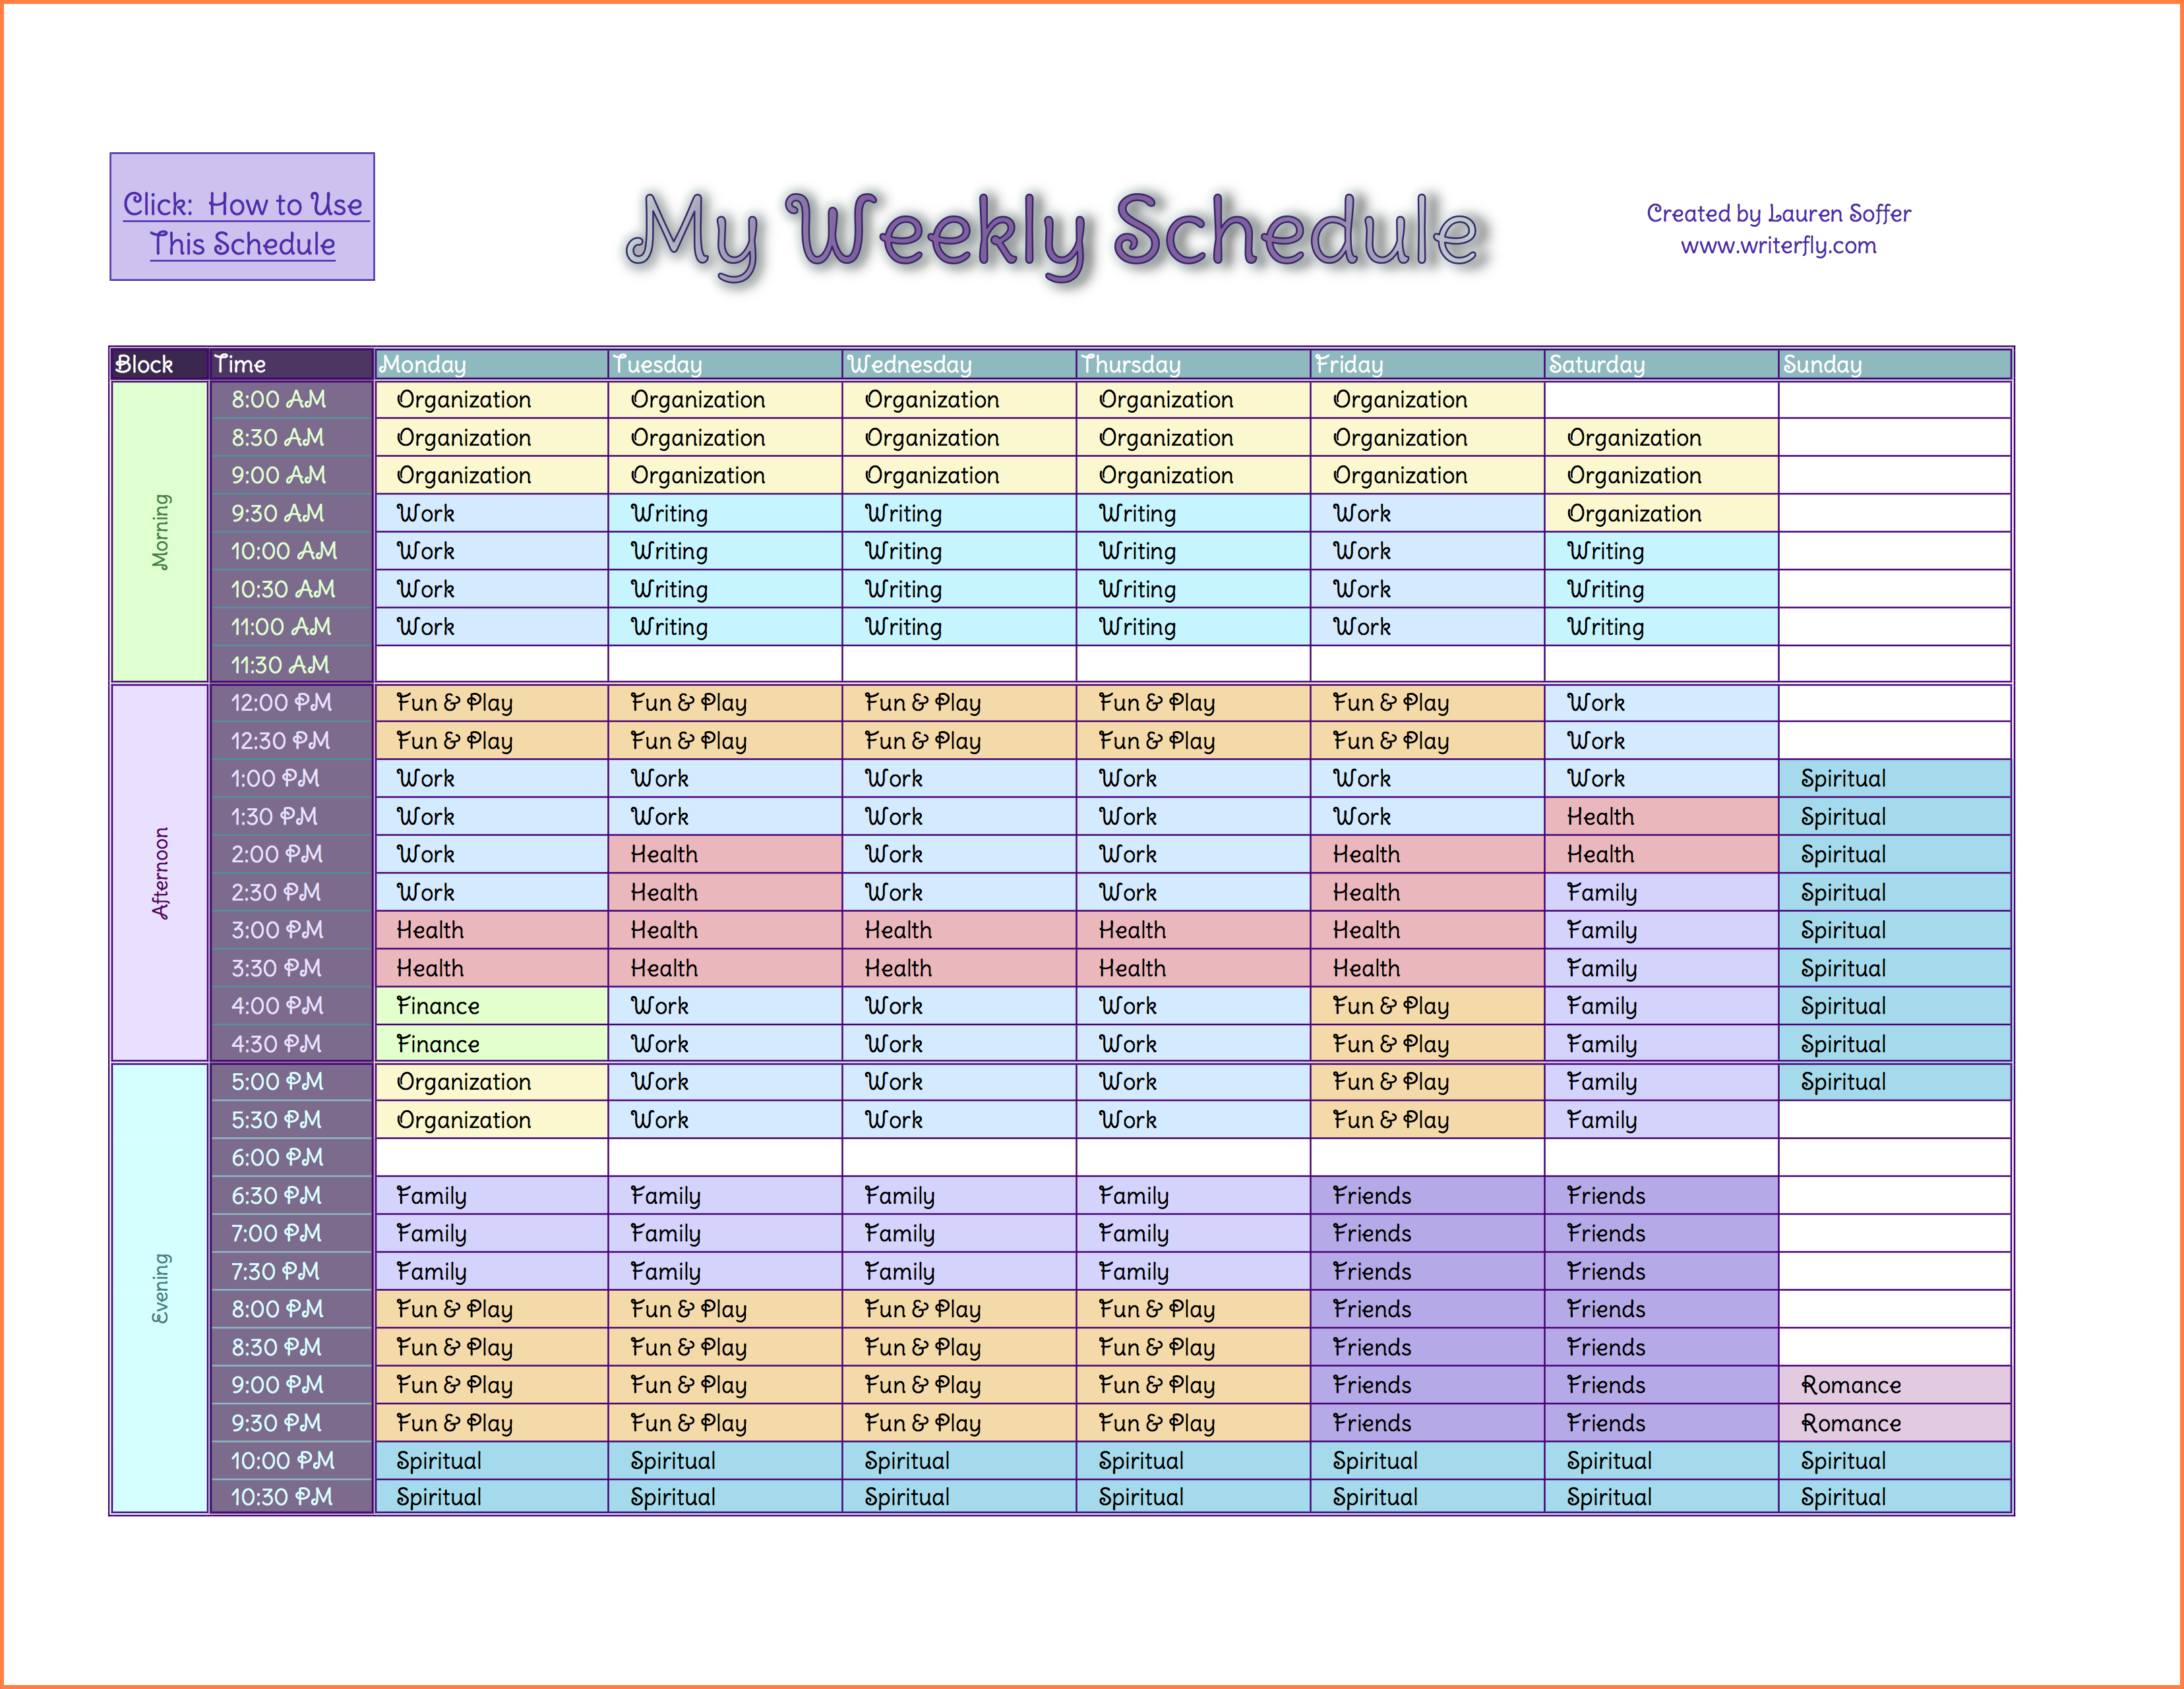 excel work schedule template